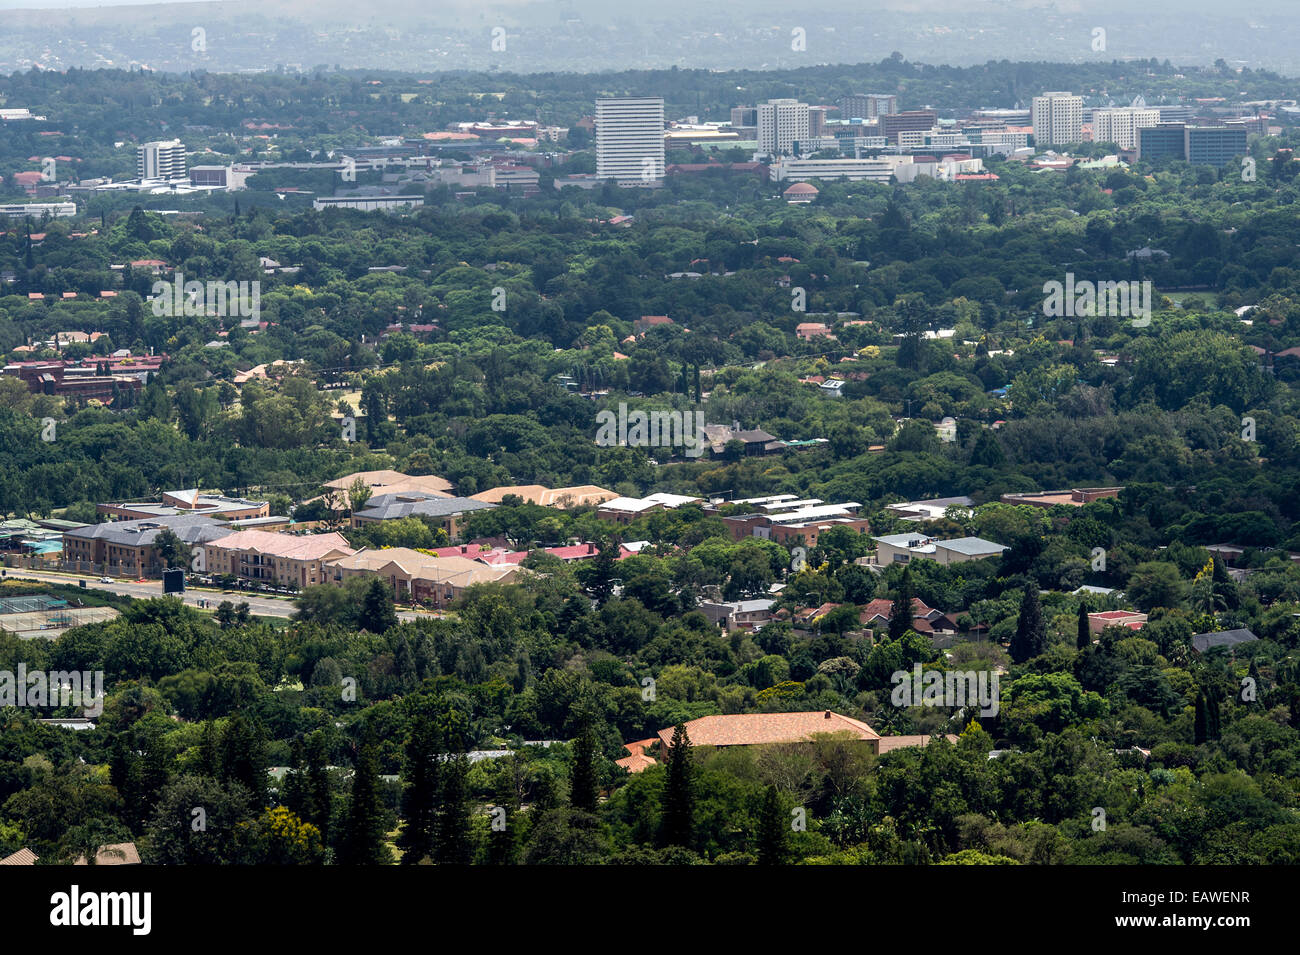 Die begrünten Straßen und Parks Südafrikas Hauptstadt Pretoria. Stockfoto